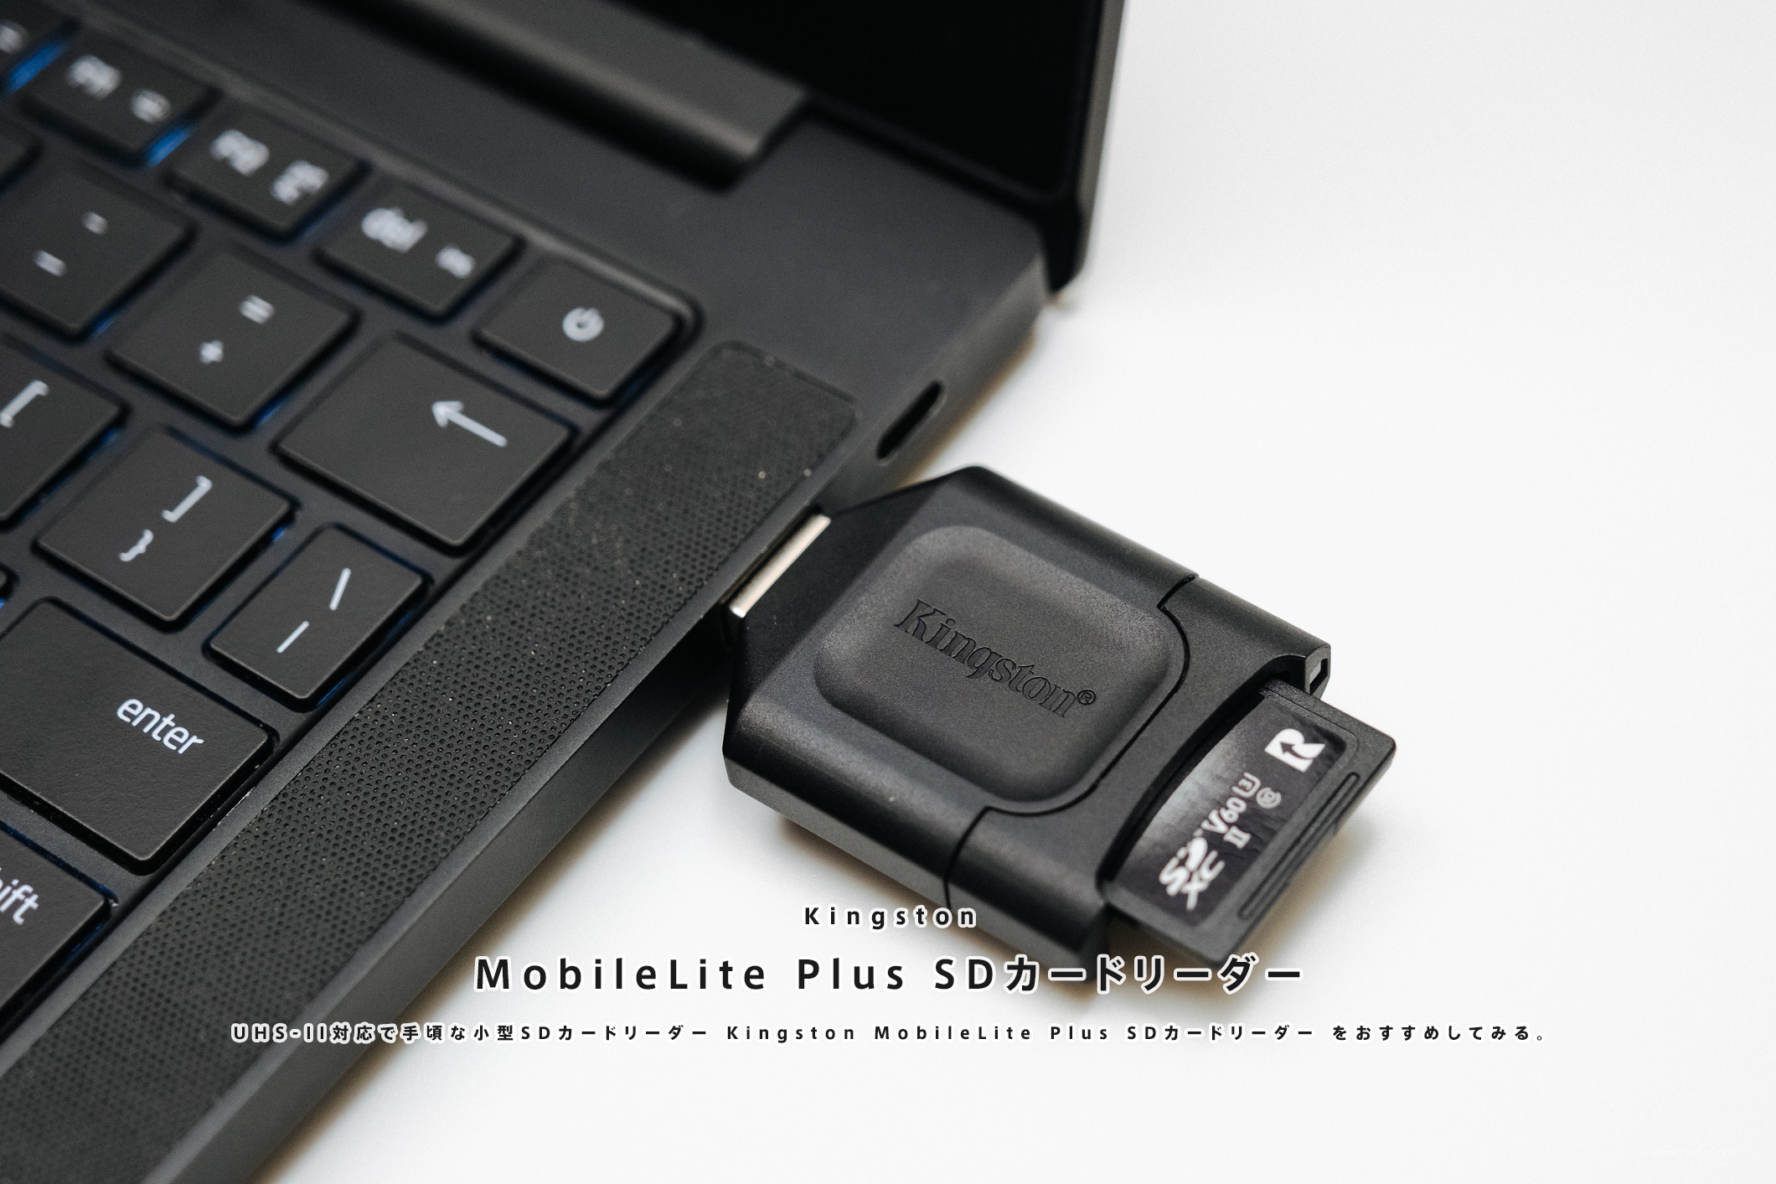 UHS-II対応で手頃な小型SDカードリーダー Kingston MobileLite Plus SDカードリーダー をおすすめしてみる。 |  かめらとブログ。